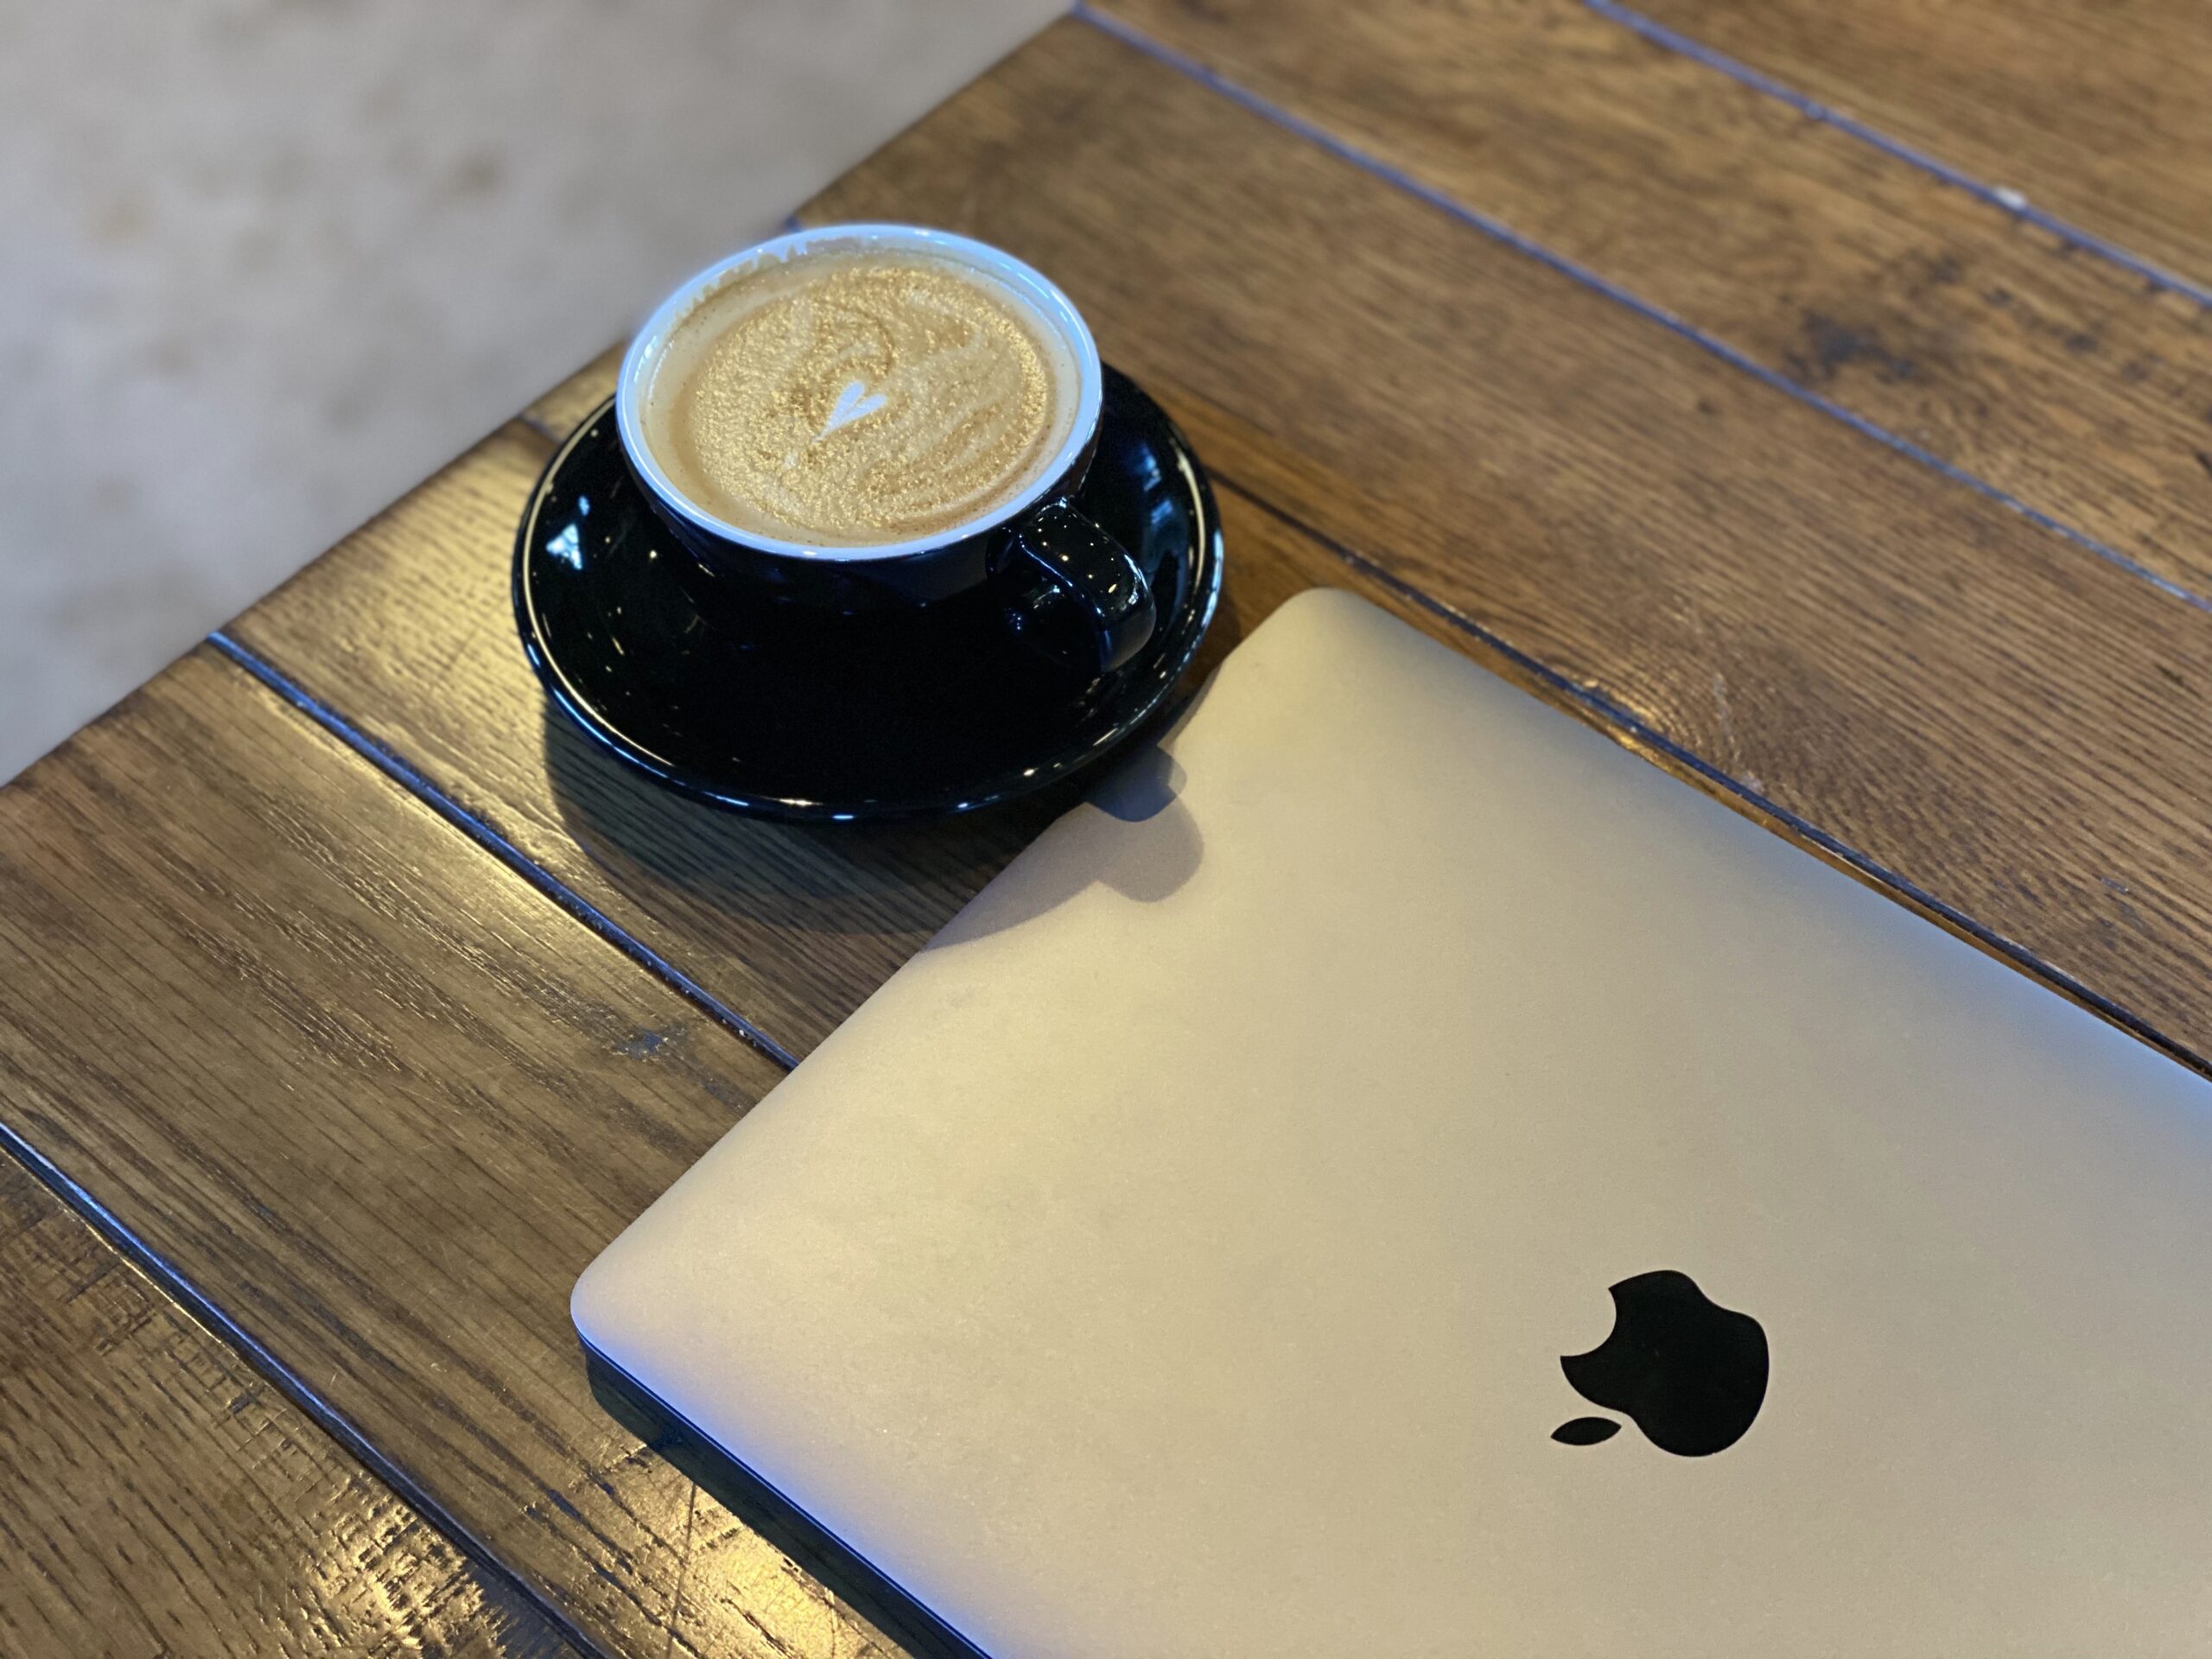 ブルートラベルエンジニア パソコン作業（プログラミング学習環境）におすすめのカフェ|青山・六本木 Little Darling Coffee Roasters（リトル・ダーリン・コーヒー・ロースターズ）